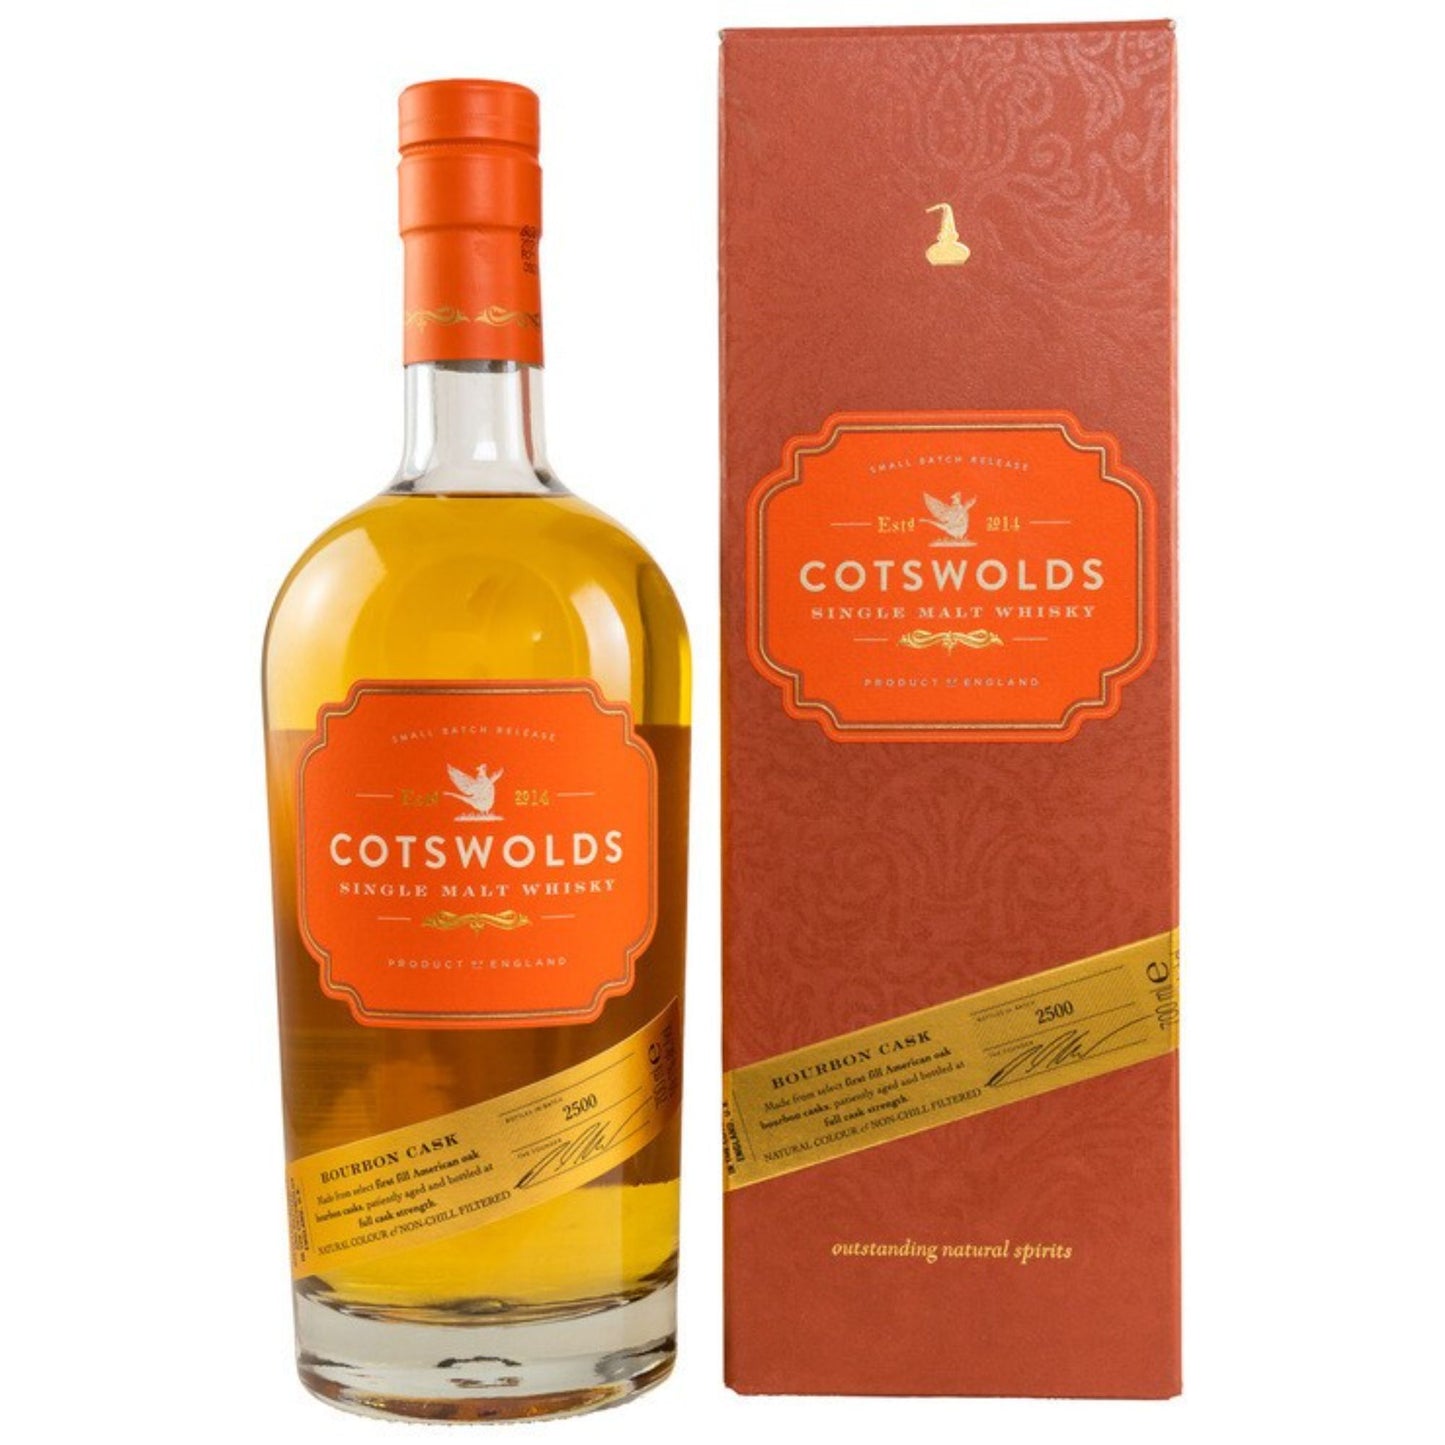 Cotswolds Bourbon Cask Single Malt Whisky 59,1% 0,7l